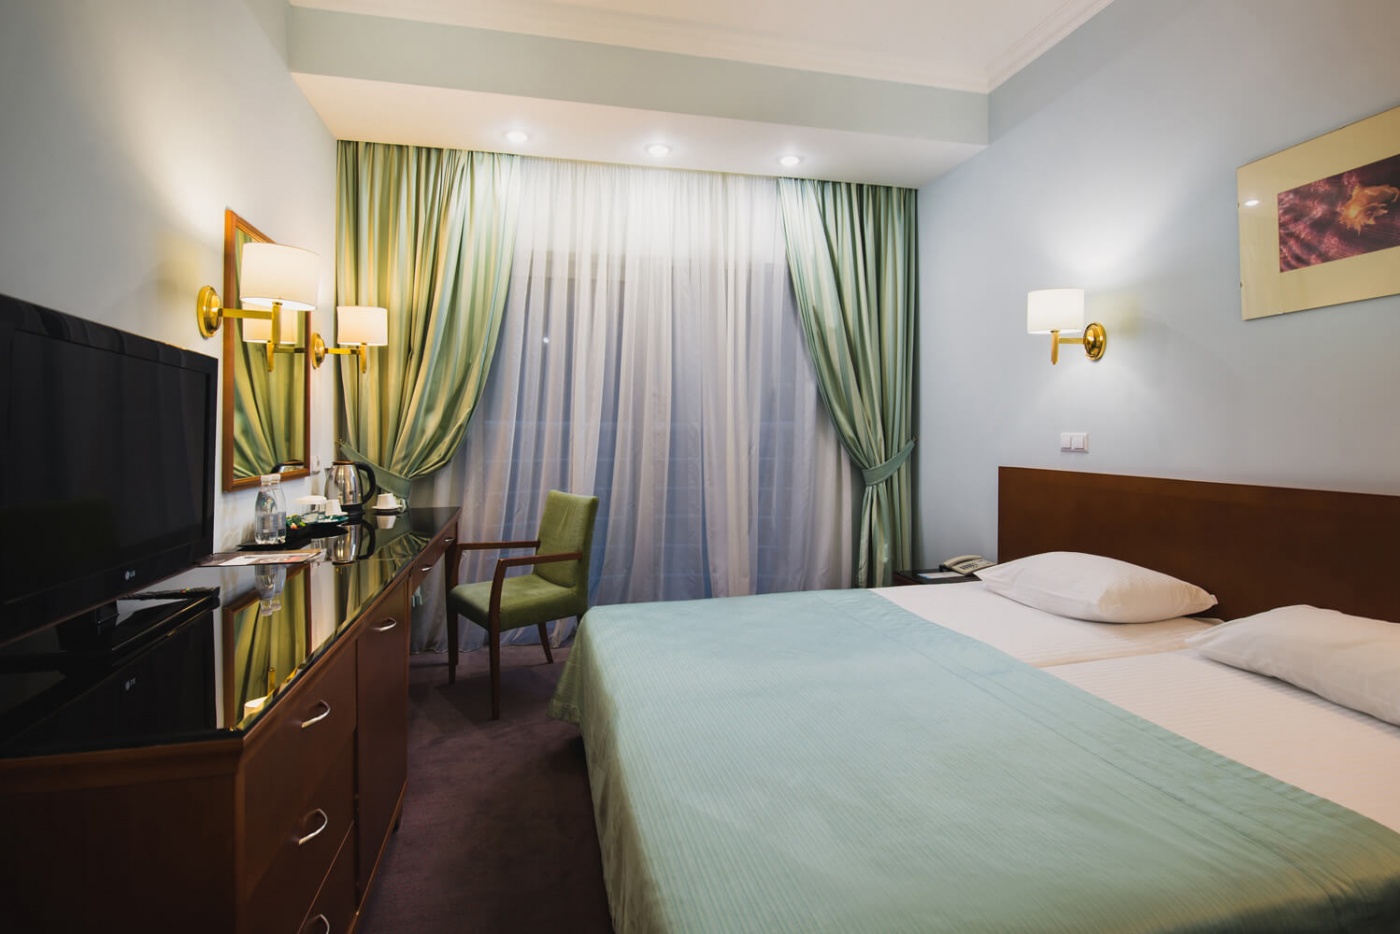  Отель «More Spa & Resort» Республика Крым Стандарт улучшенный, фото 1